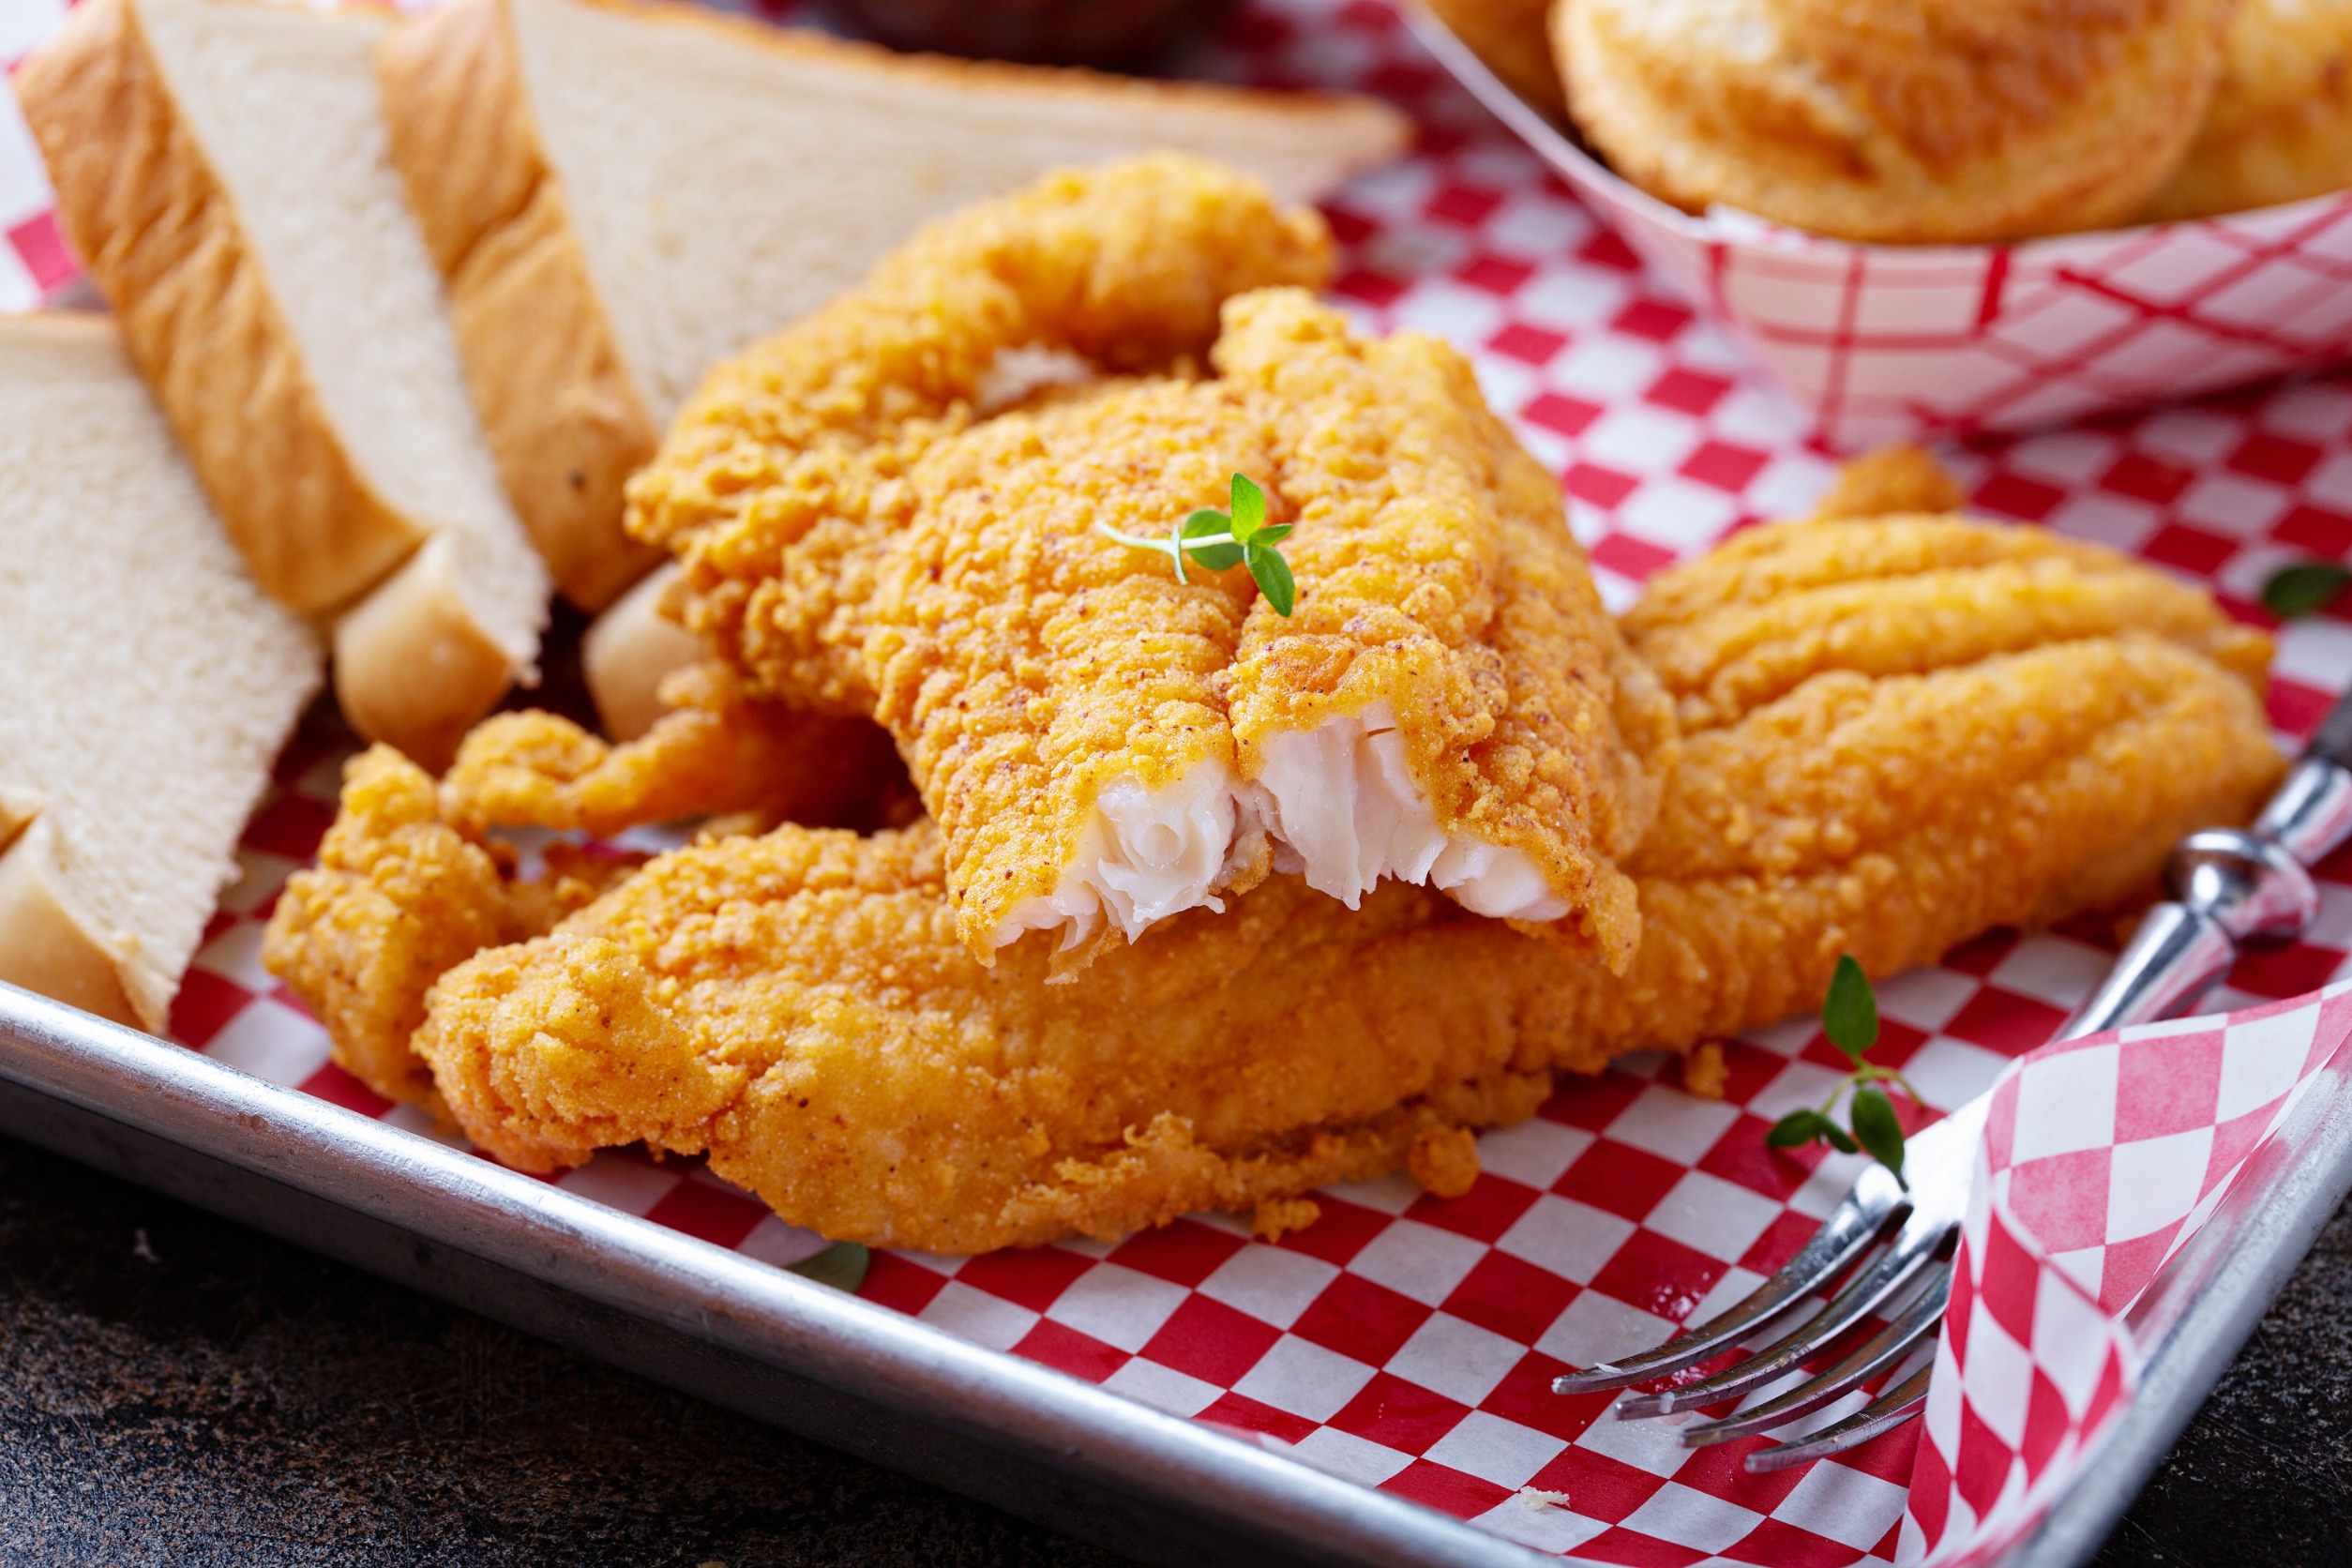 Fried catfish, Yum!